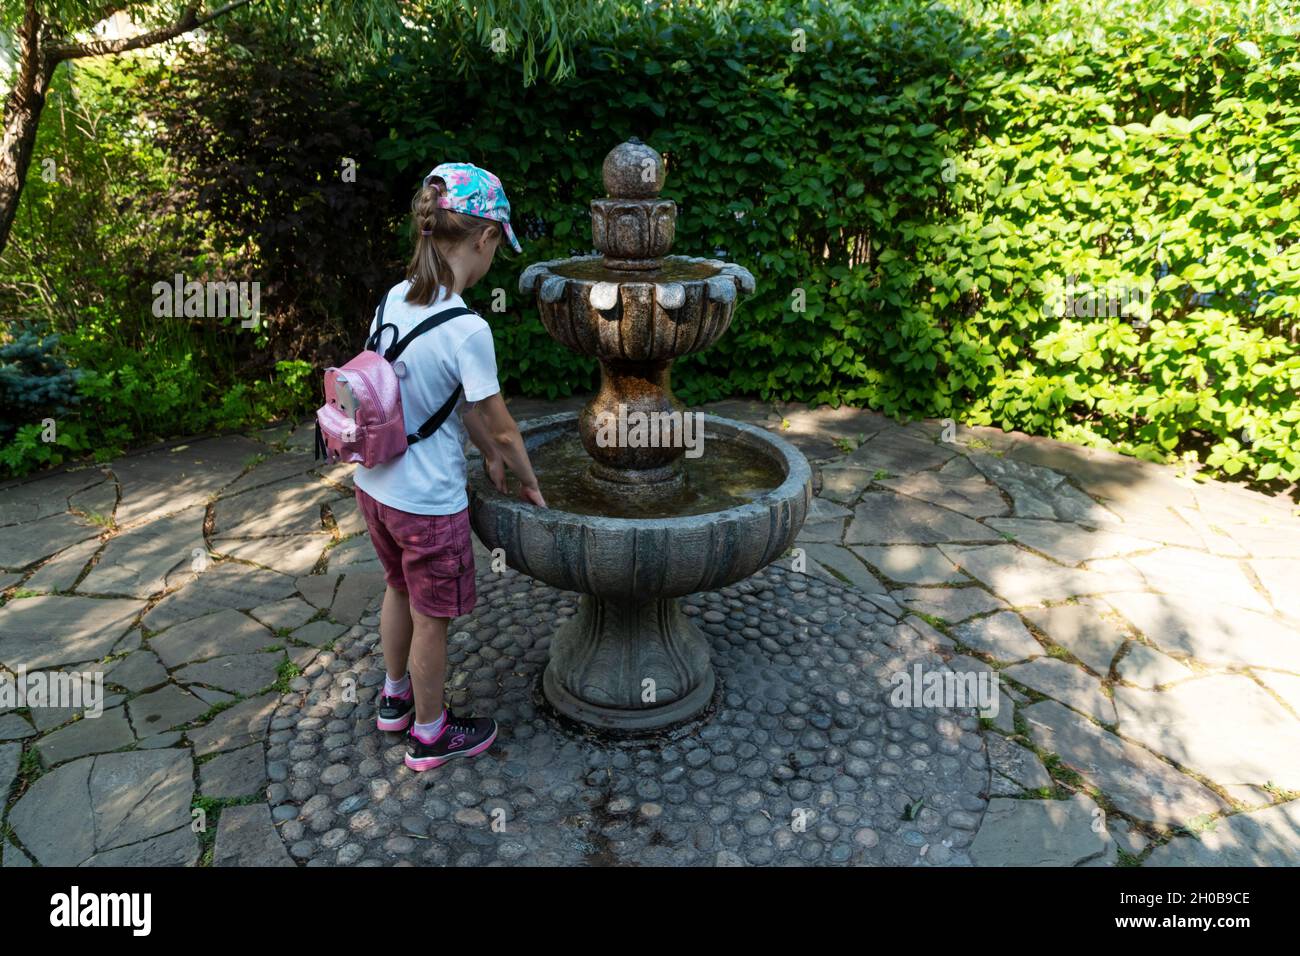 Una chica en una gorra y con una mochila llita su mano en un tazón de fuente en miniatura de pie a la sombra de los árboles en un día caluroso de verano. Foto de stock